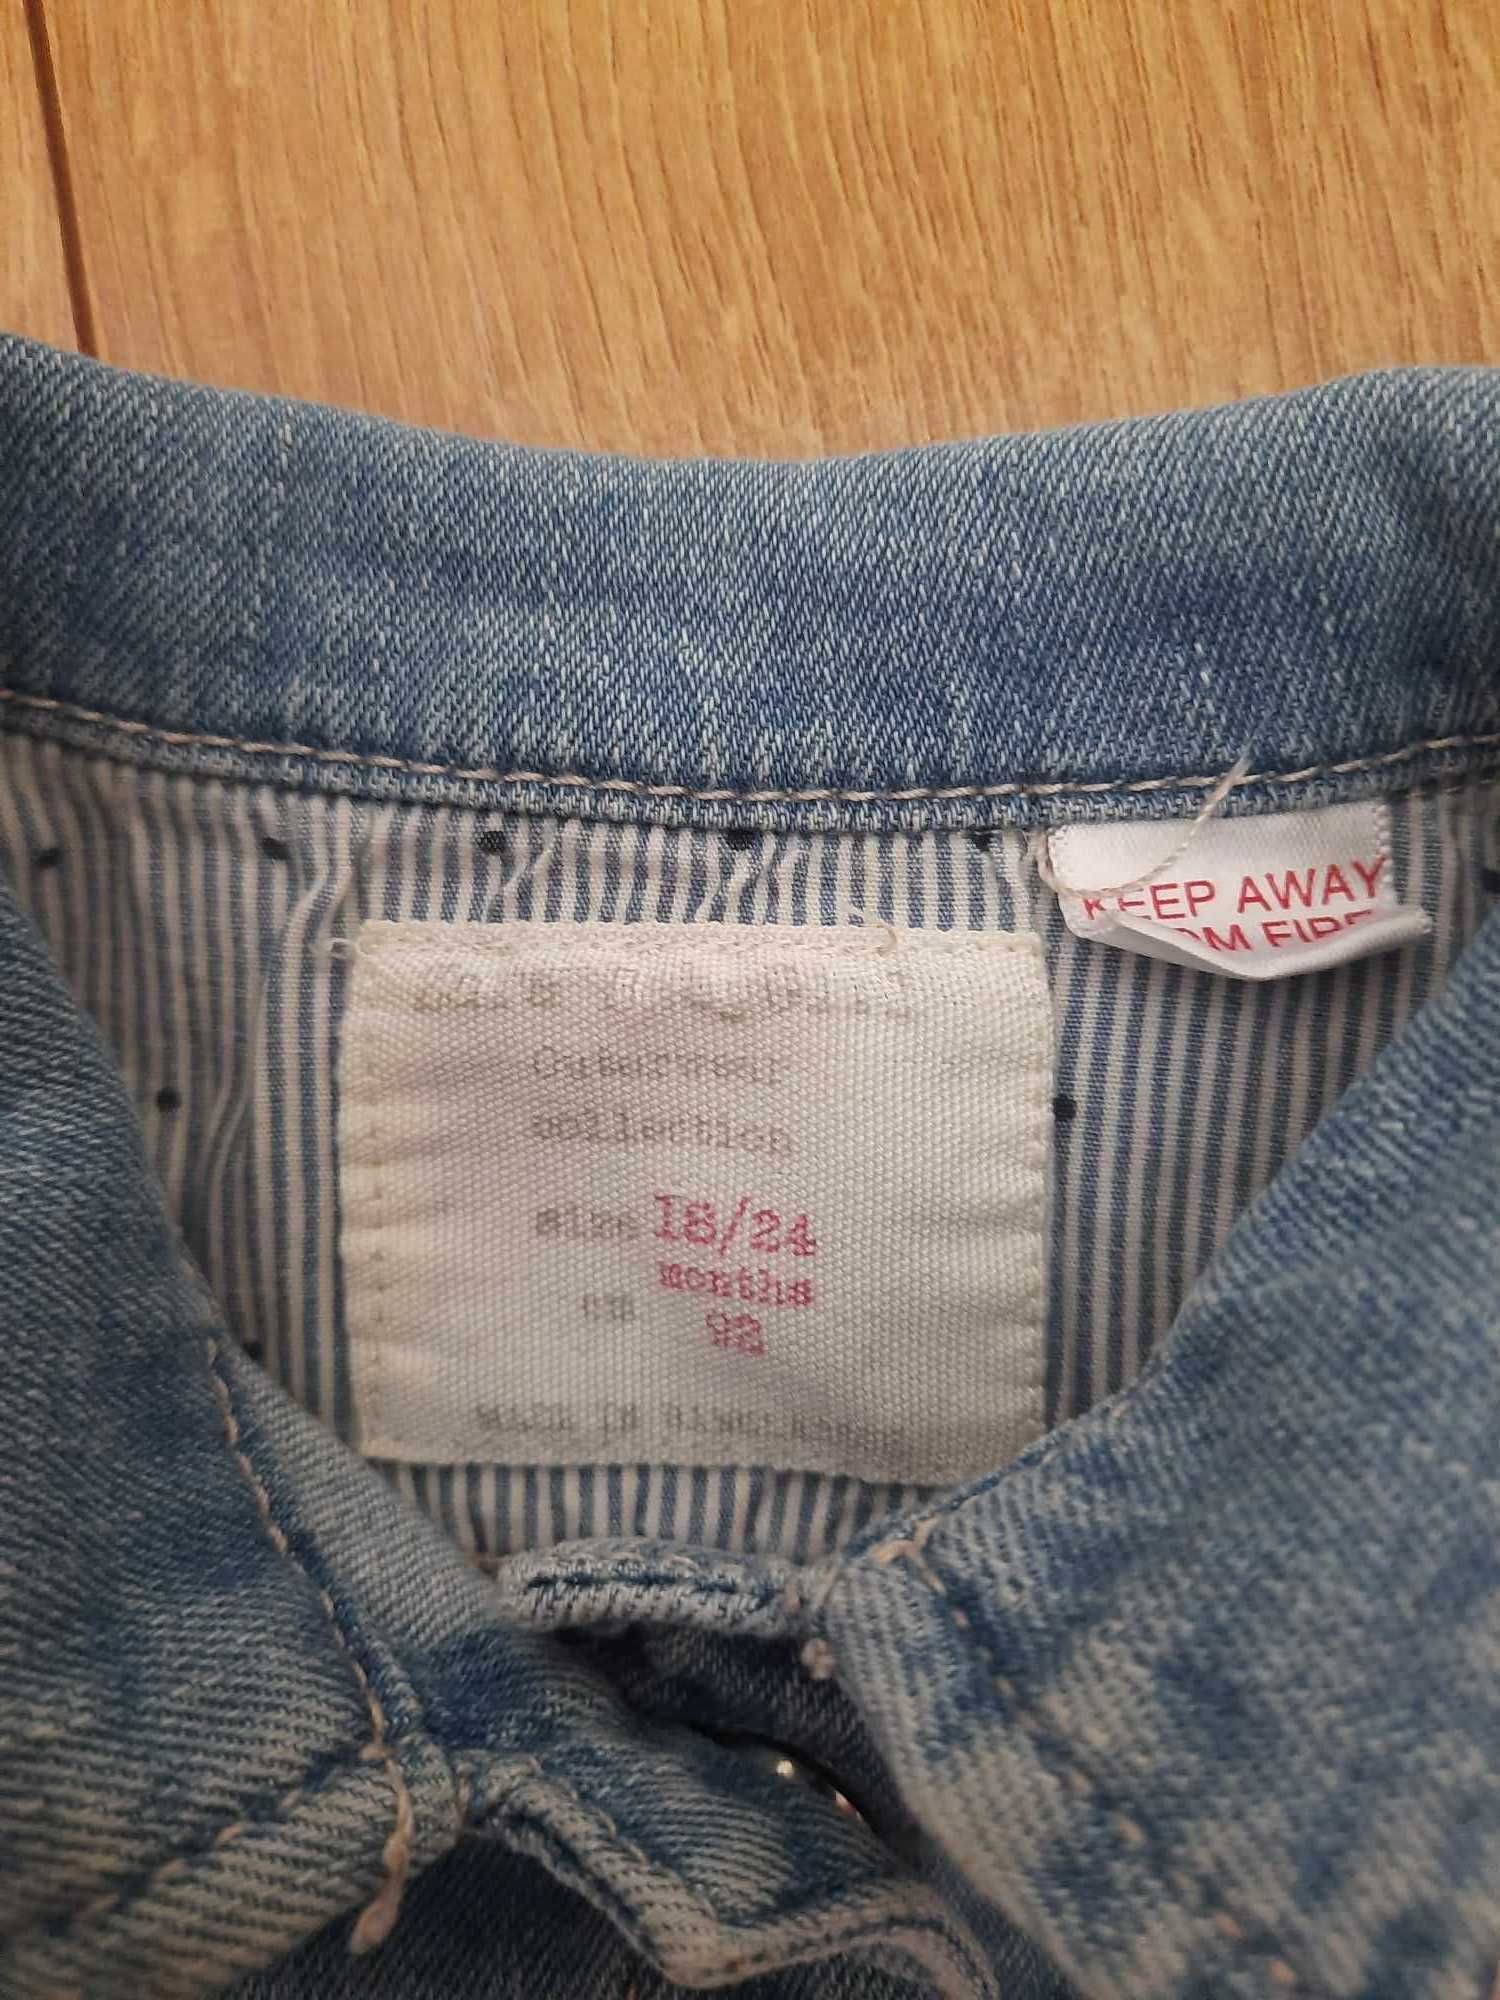 kurtka jeansowa dla dziewczynki, marki Zara, rozmiar 92